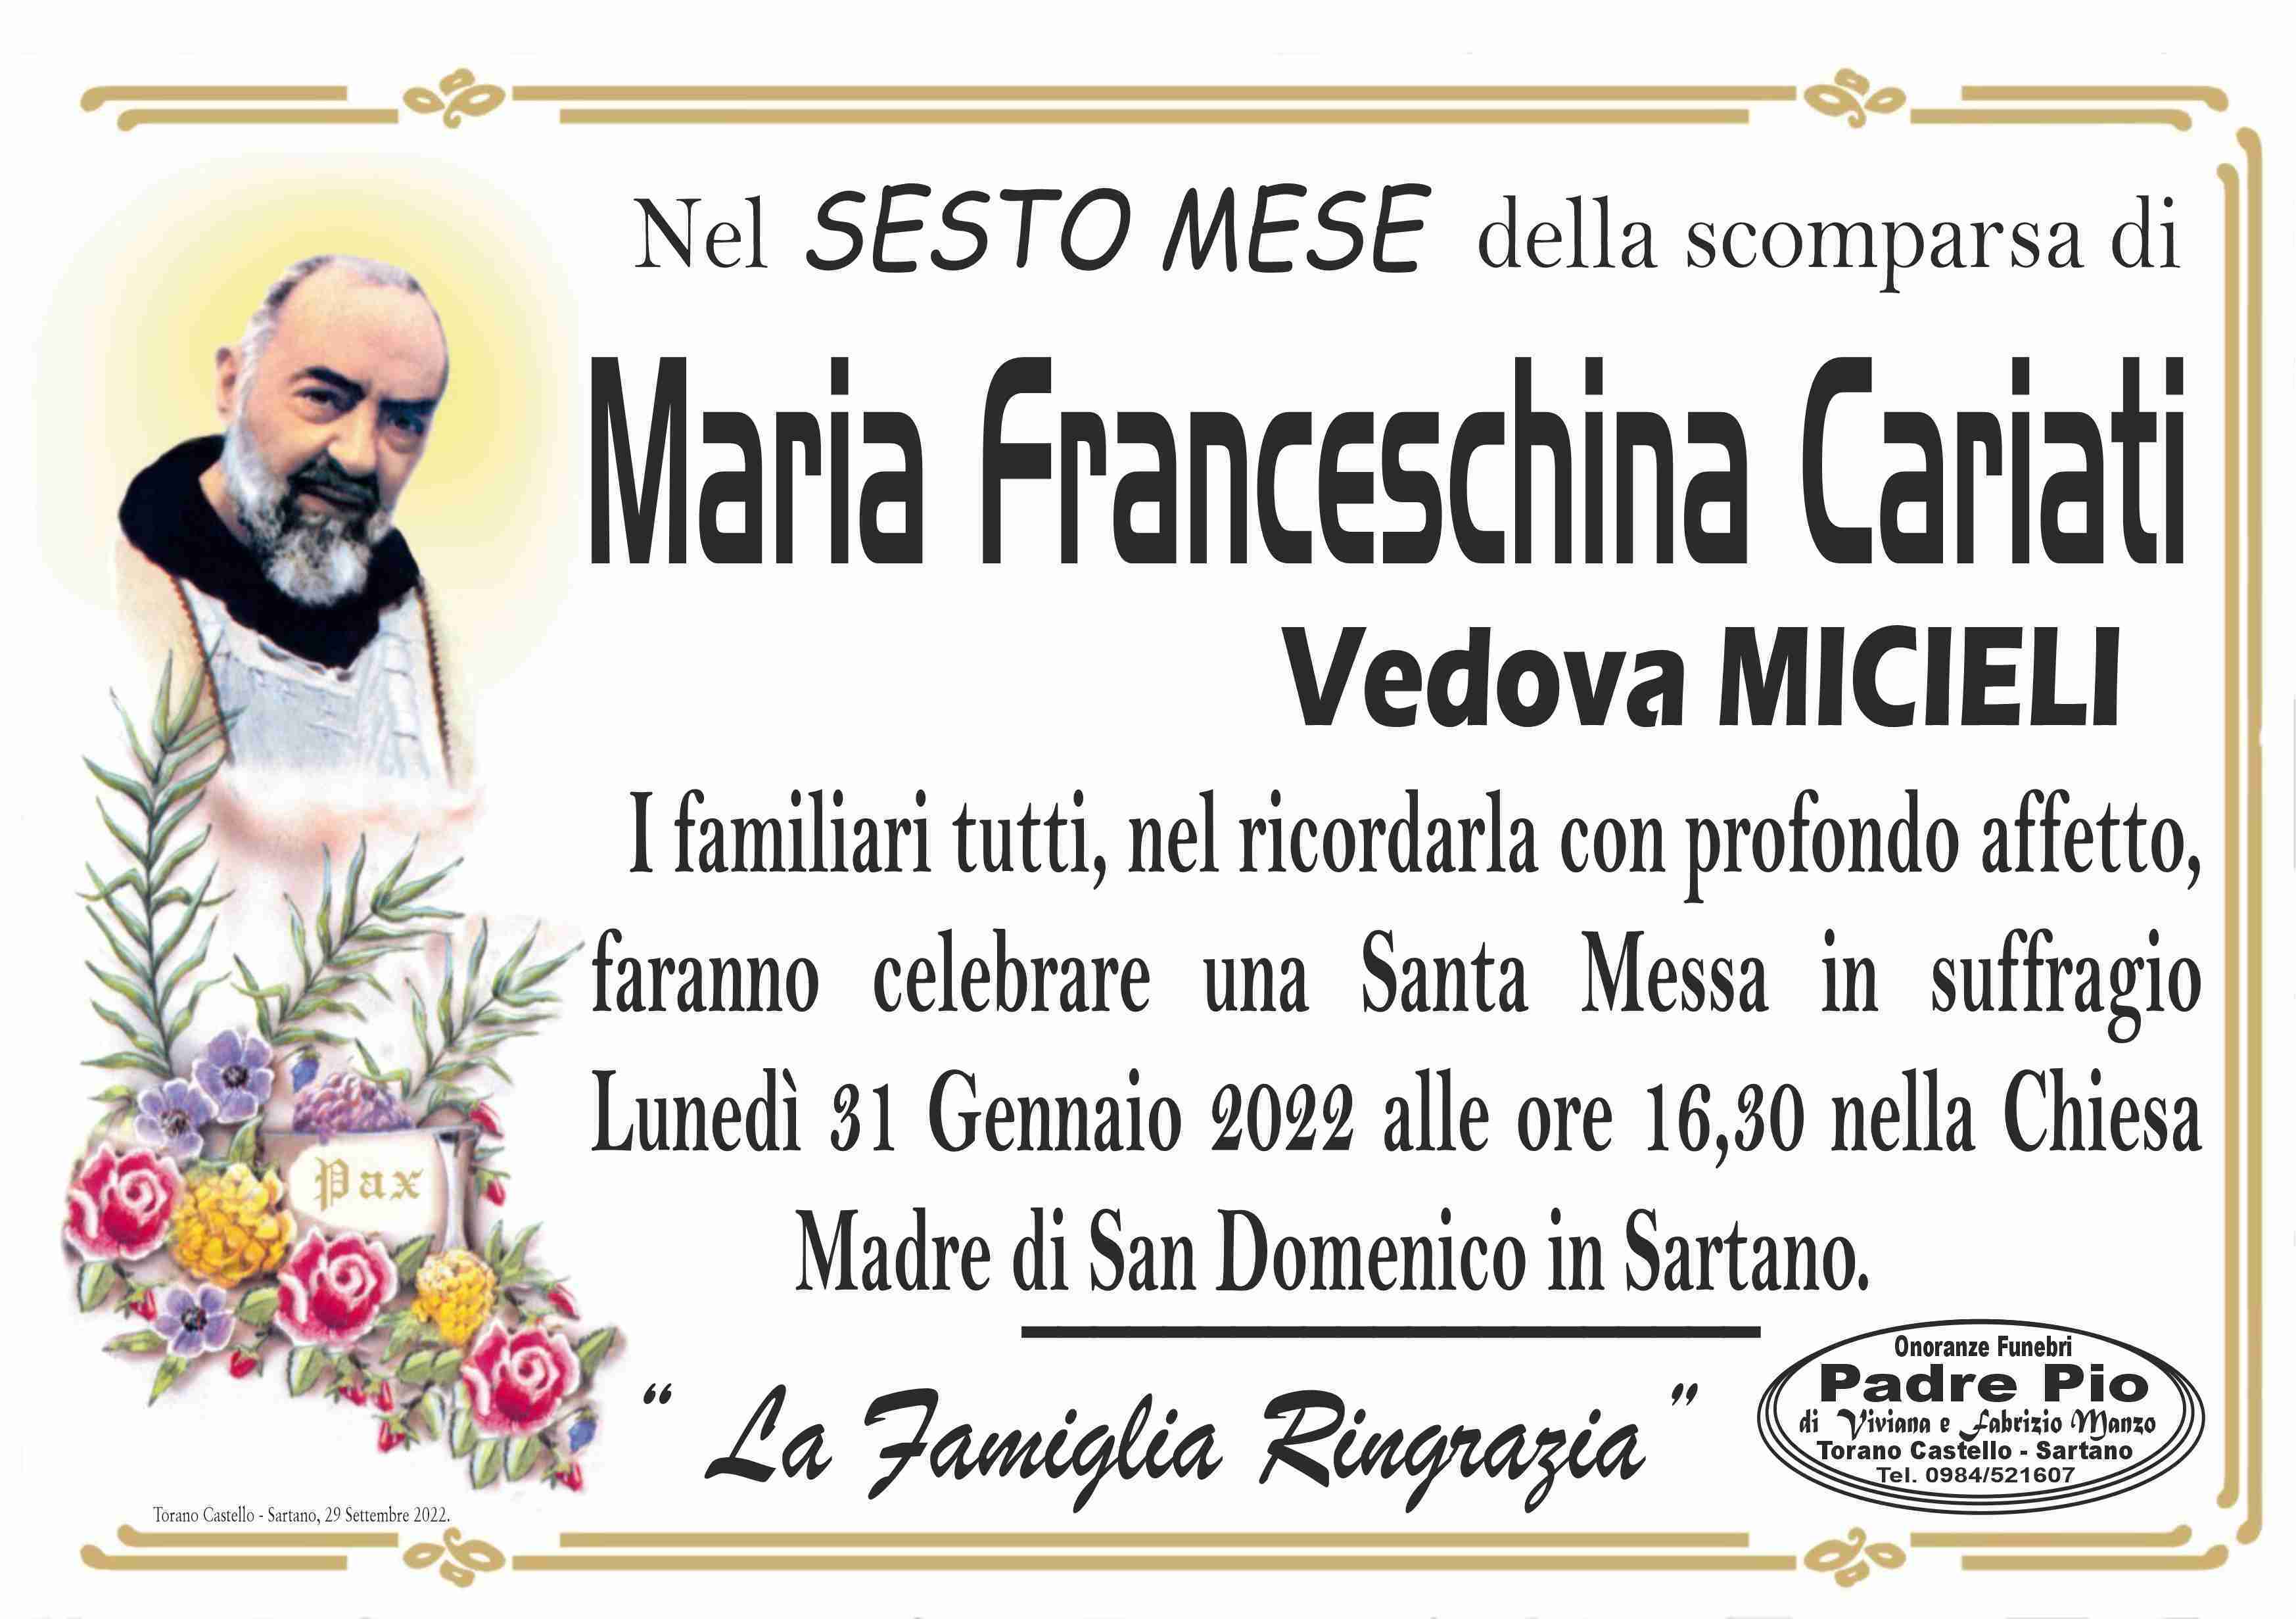 Maria Franceschina Cariati